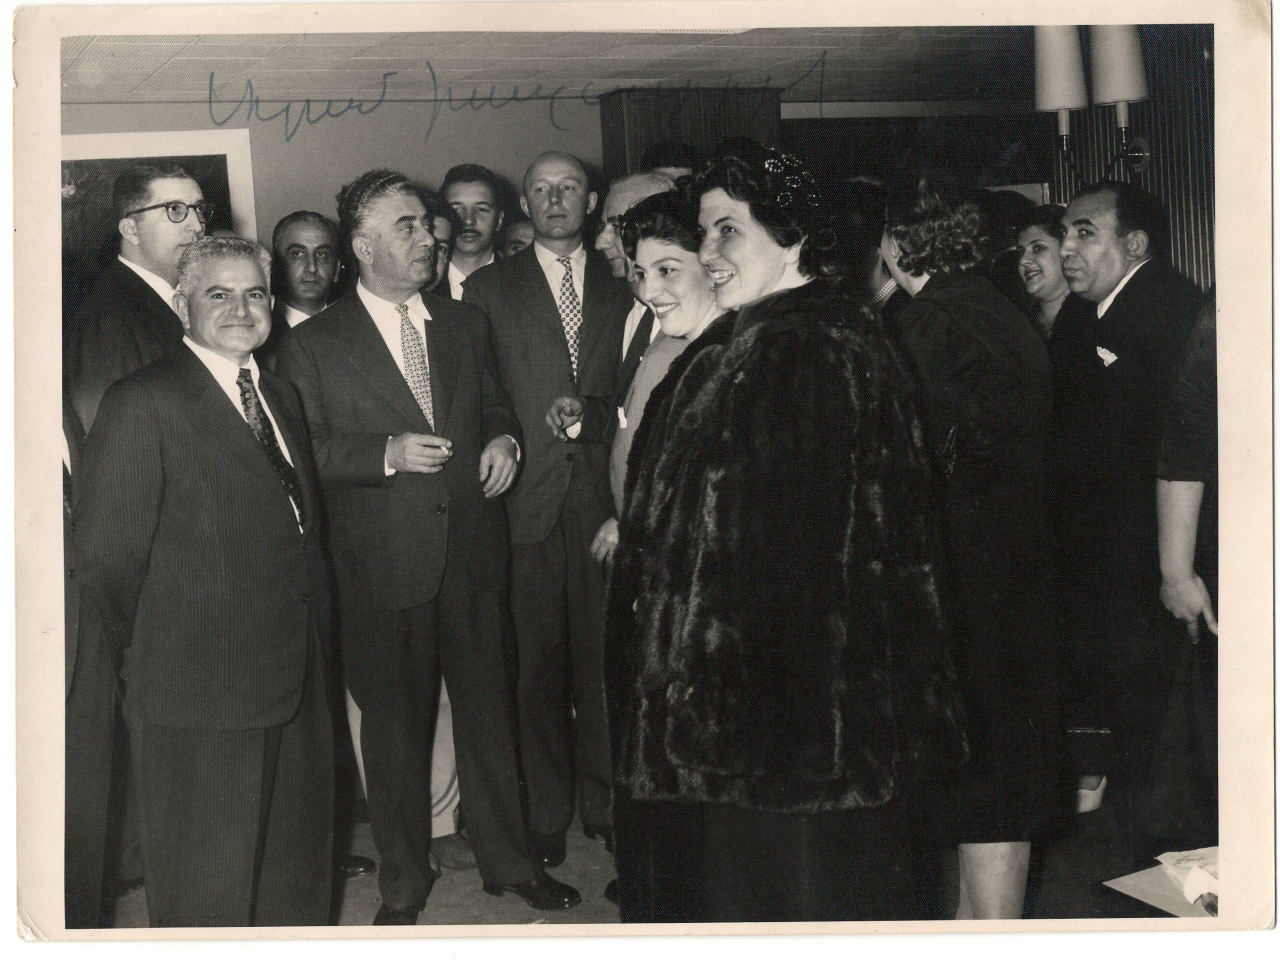 Լուսանկար. Ա. Խաչատրյանը Գ. Բազարյանի և իր արվեստի երկրպագուների հետ